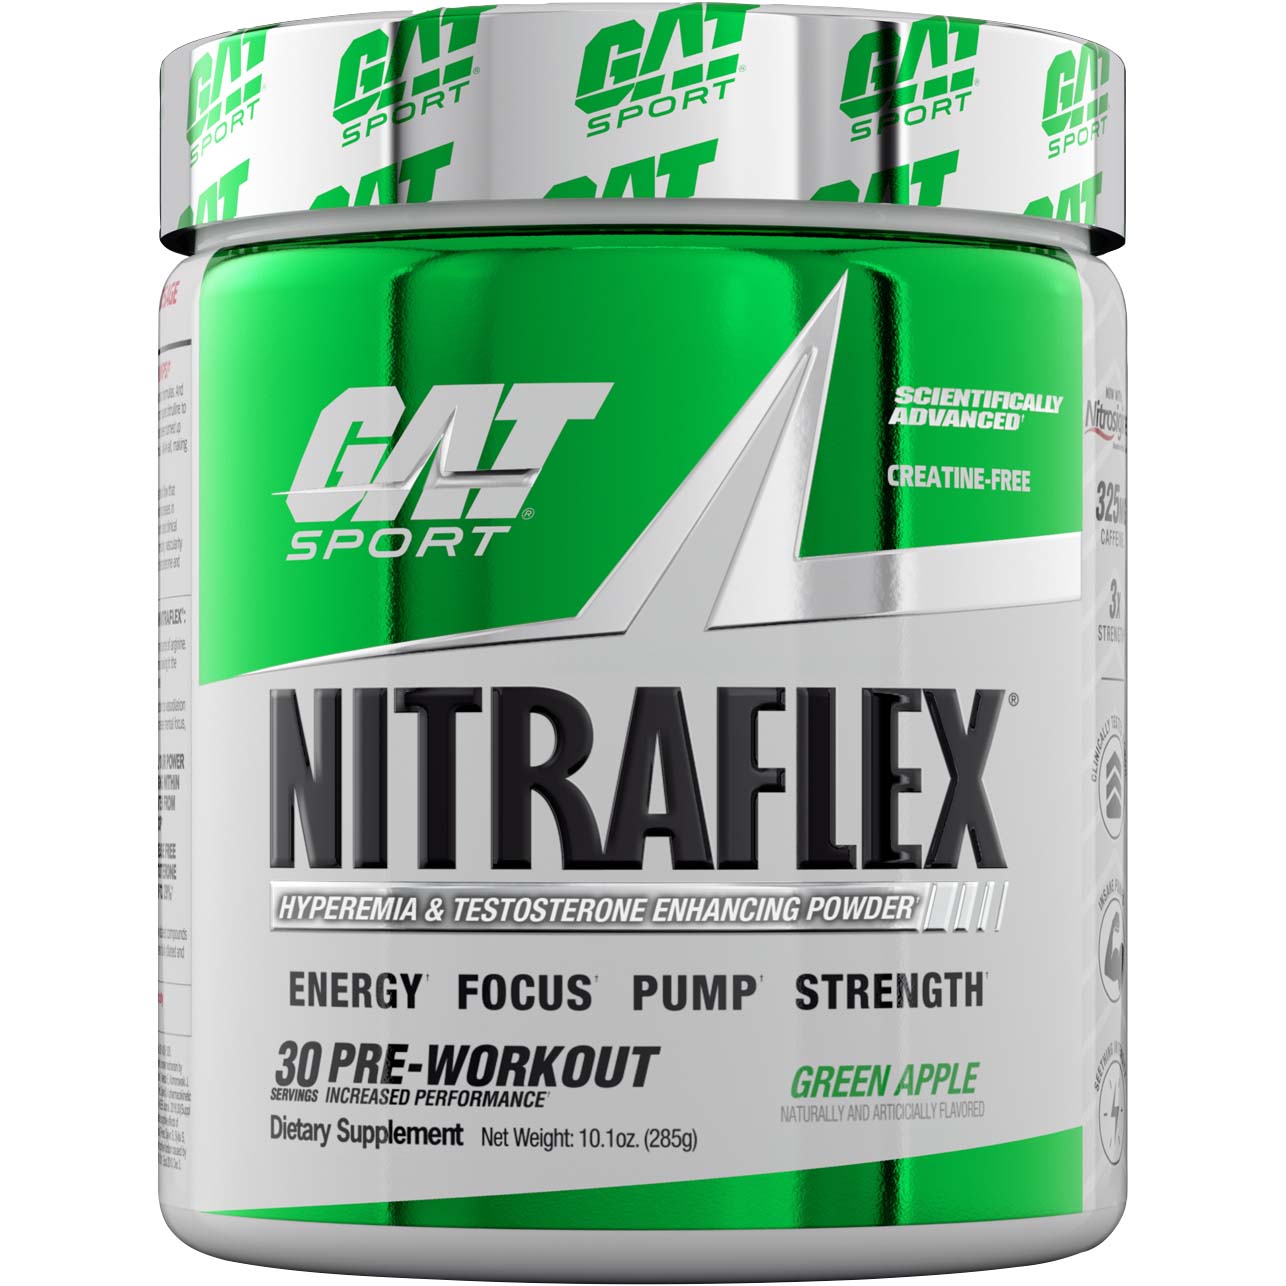 Gat Sport Nitraflex Testosterone Boosting Powder 30 Green Apple